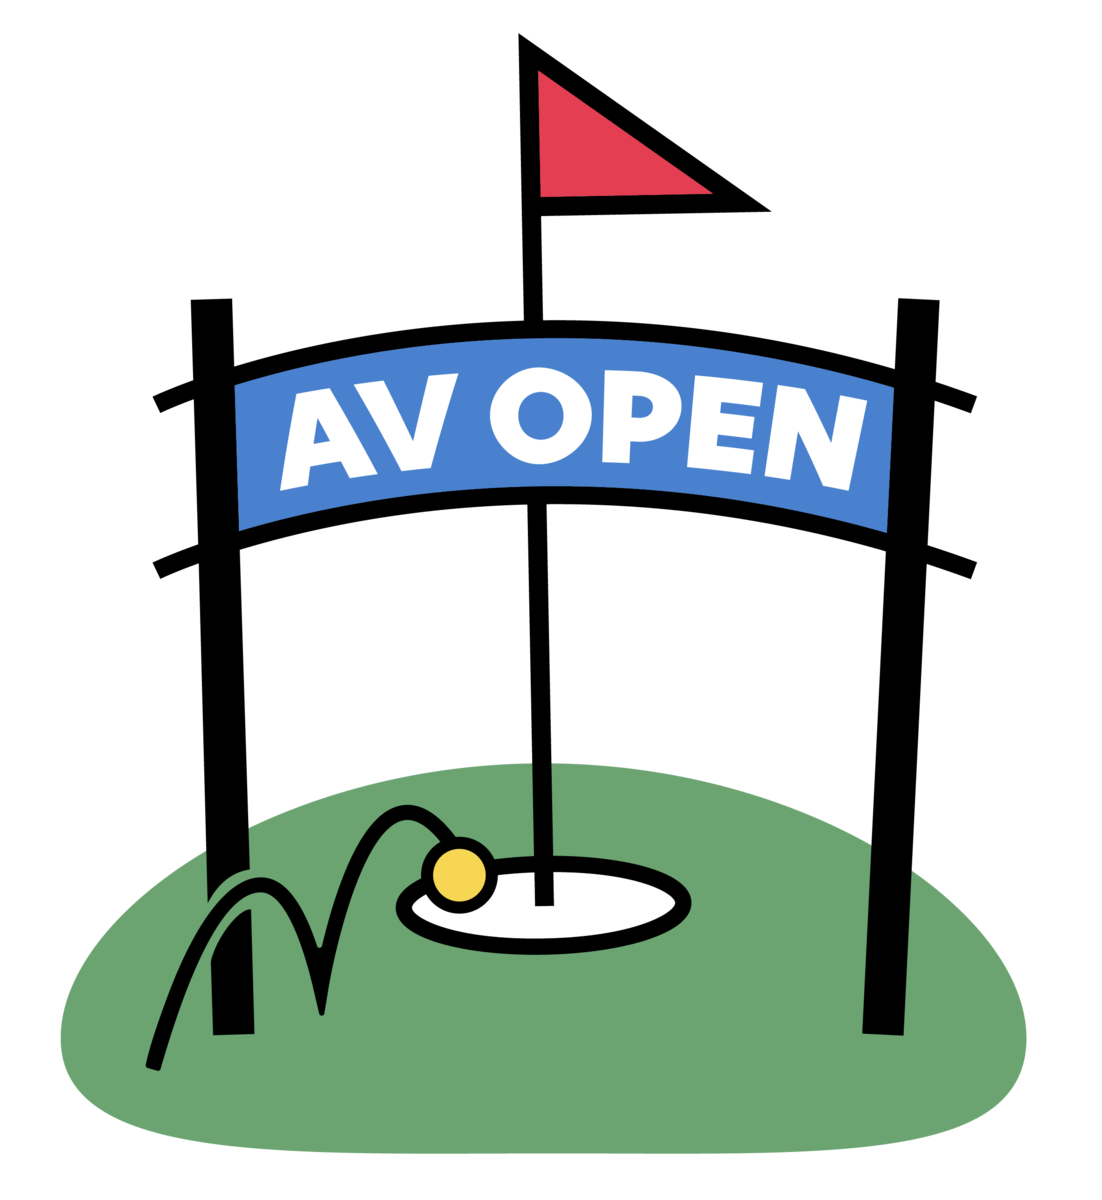 Av open